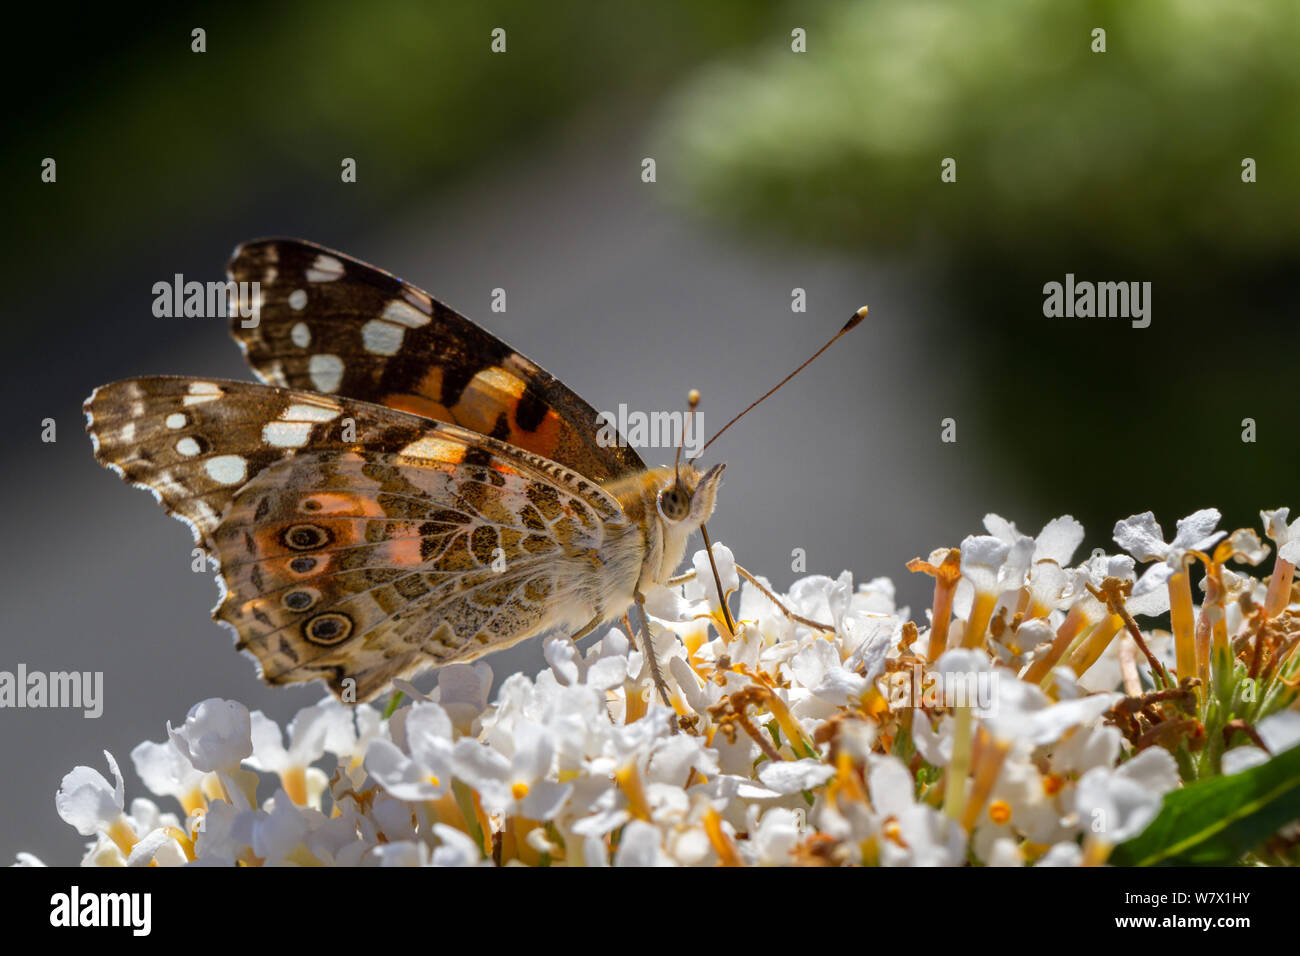 Regno Unito Fauna selvatica: la splendida immagine di un dipinto di lady butterfly (Vanessa cardui) bere il nettare da un bianco fiore buddleia (butterfly bush) Foto Stock